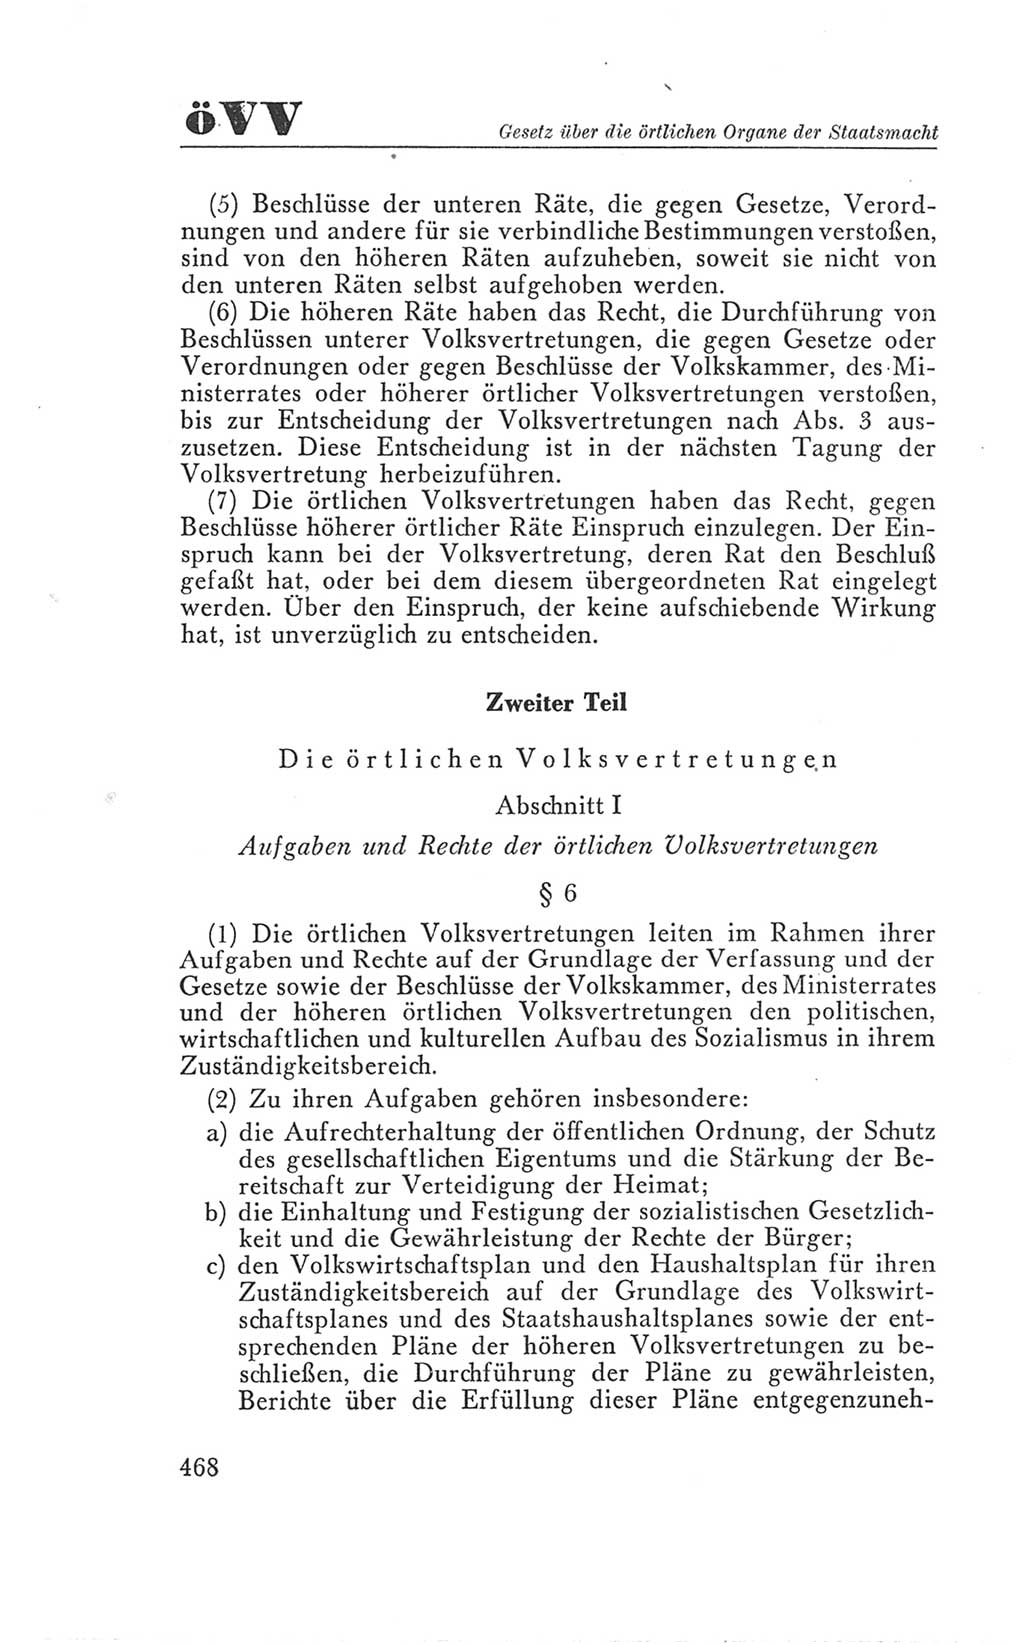 Handbuch der Volkskammer (VK) der Deutschen Demokratischen Republik (DDR), 3. Wahlperiode 1958-1963, Seite 468 (Hdb. VK. DDR 3. WP. 1958-1963, S. 468)